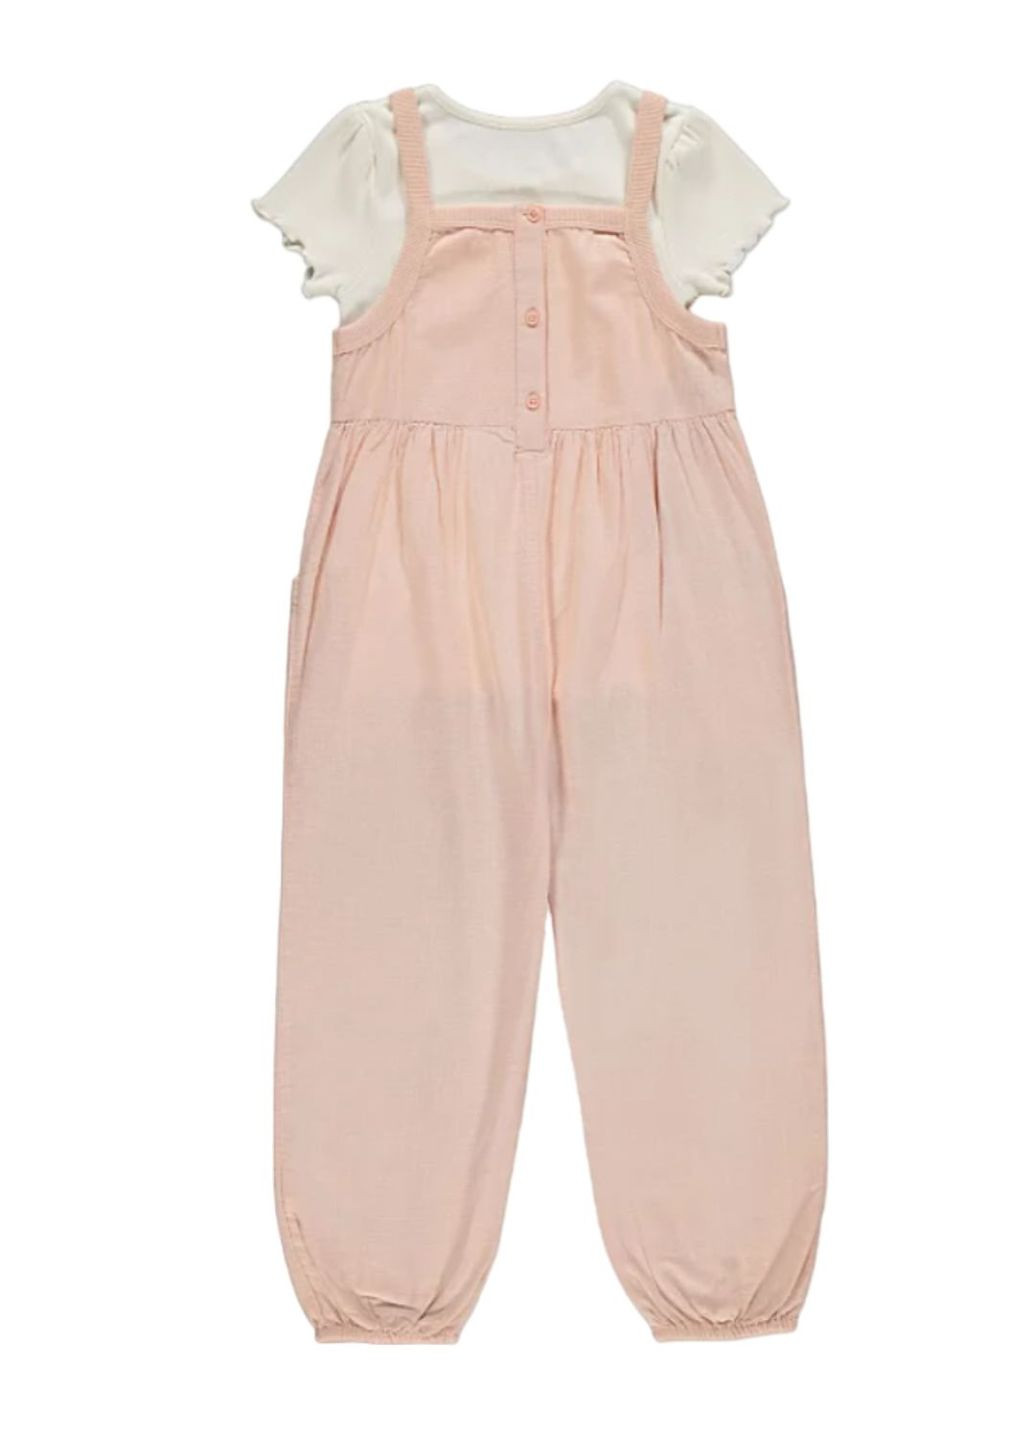 Світло-рожевий костюмчик (футболка+комбінезон) літній gеоrgе для дівчинки, рожево-молочний, 110-116 см George